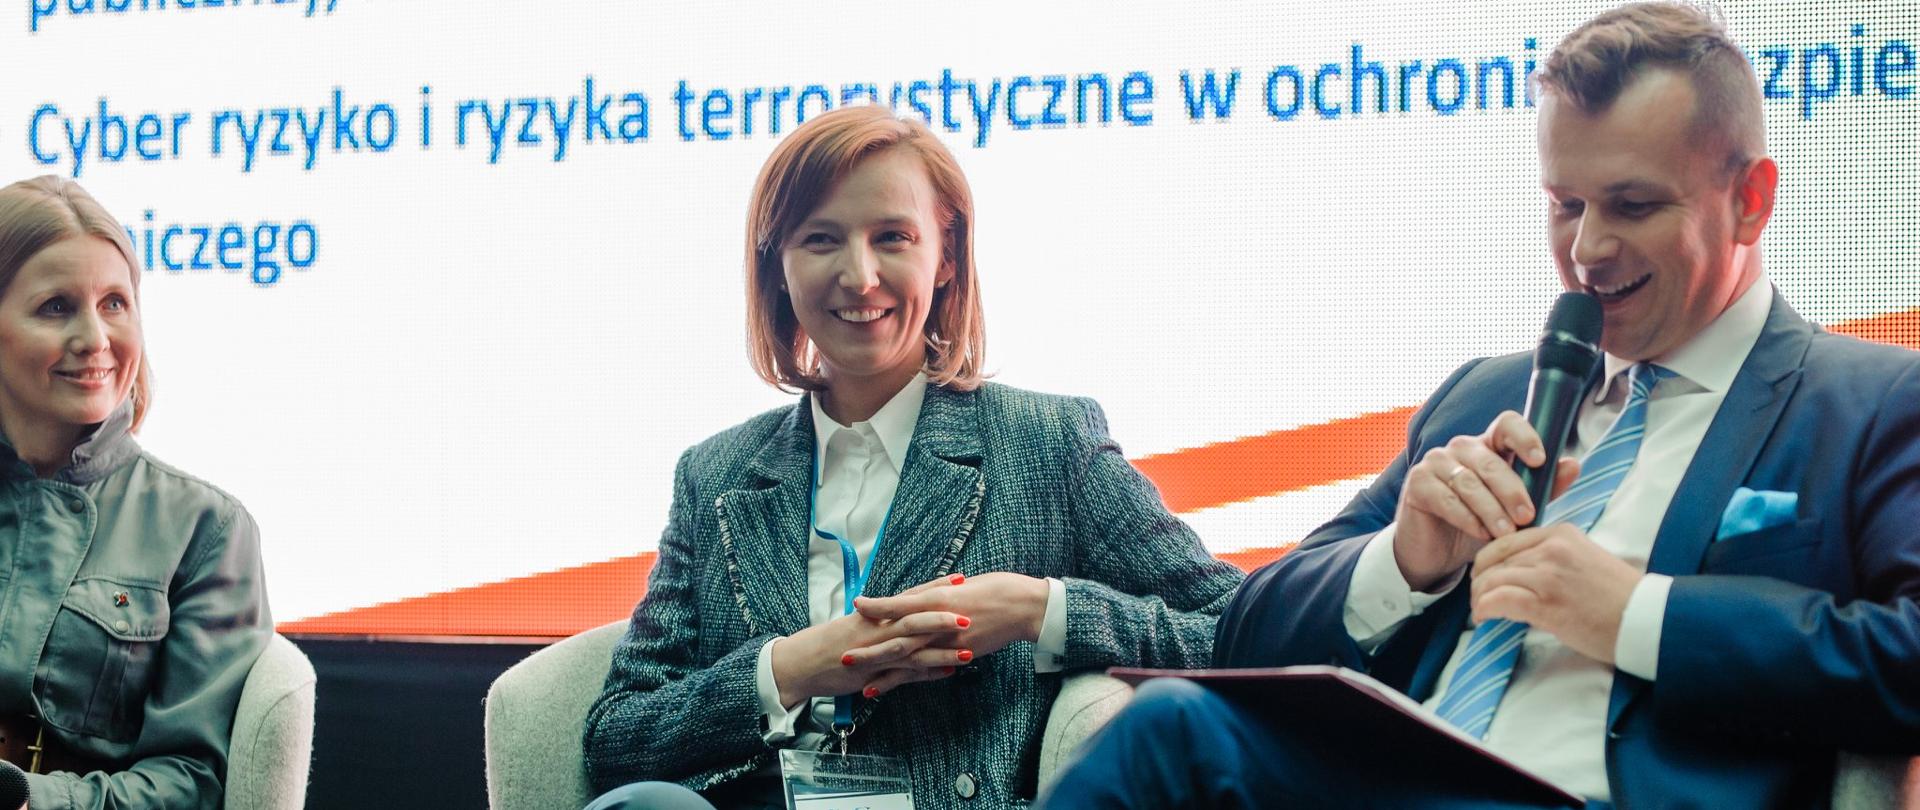 Z prawej strony na fotelu siedzi wiceminister Adam Hamryszczak. Trzyma mikrofon przy ustach. Obok niego siedzą dwie kobiety.